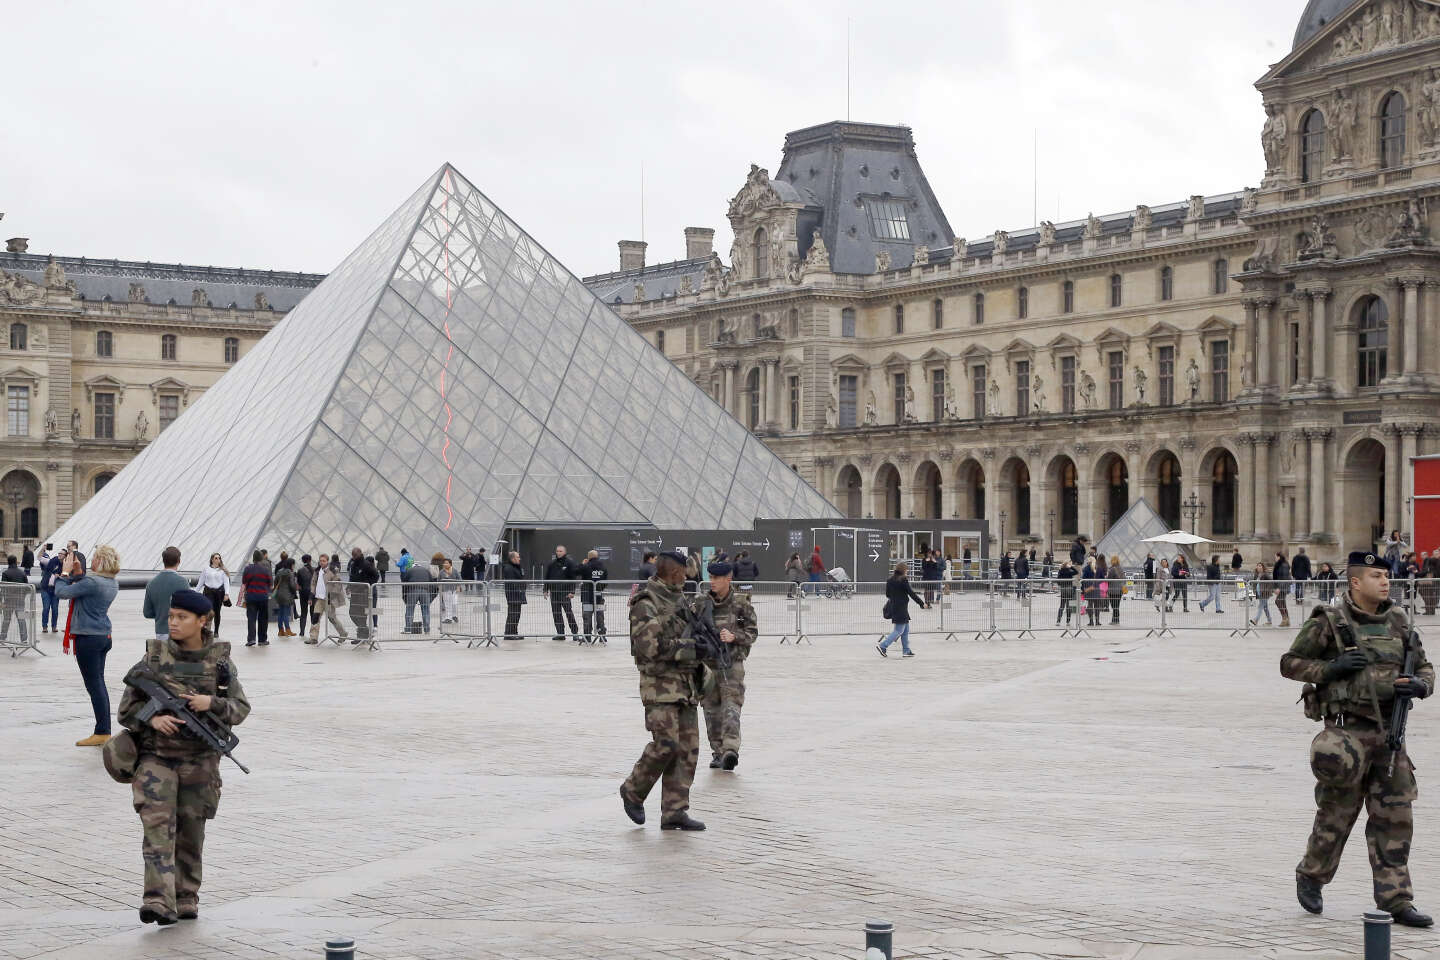 Perto de 15 mil militares mobilizados para os Jogos Olímpicos Paris'2024 -  Paris'2024 - Jornal Record